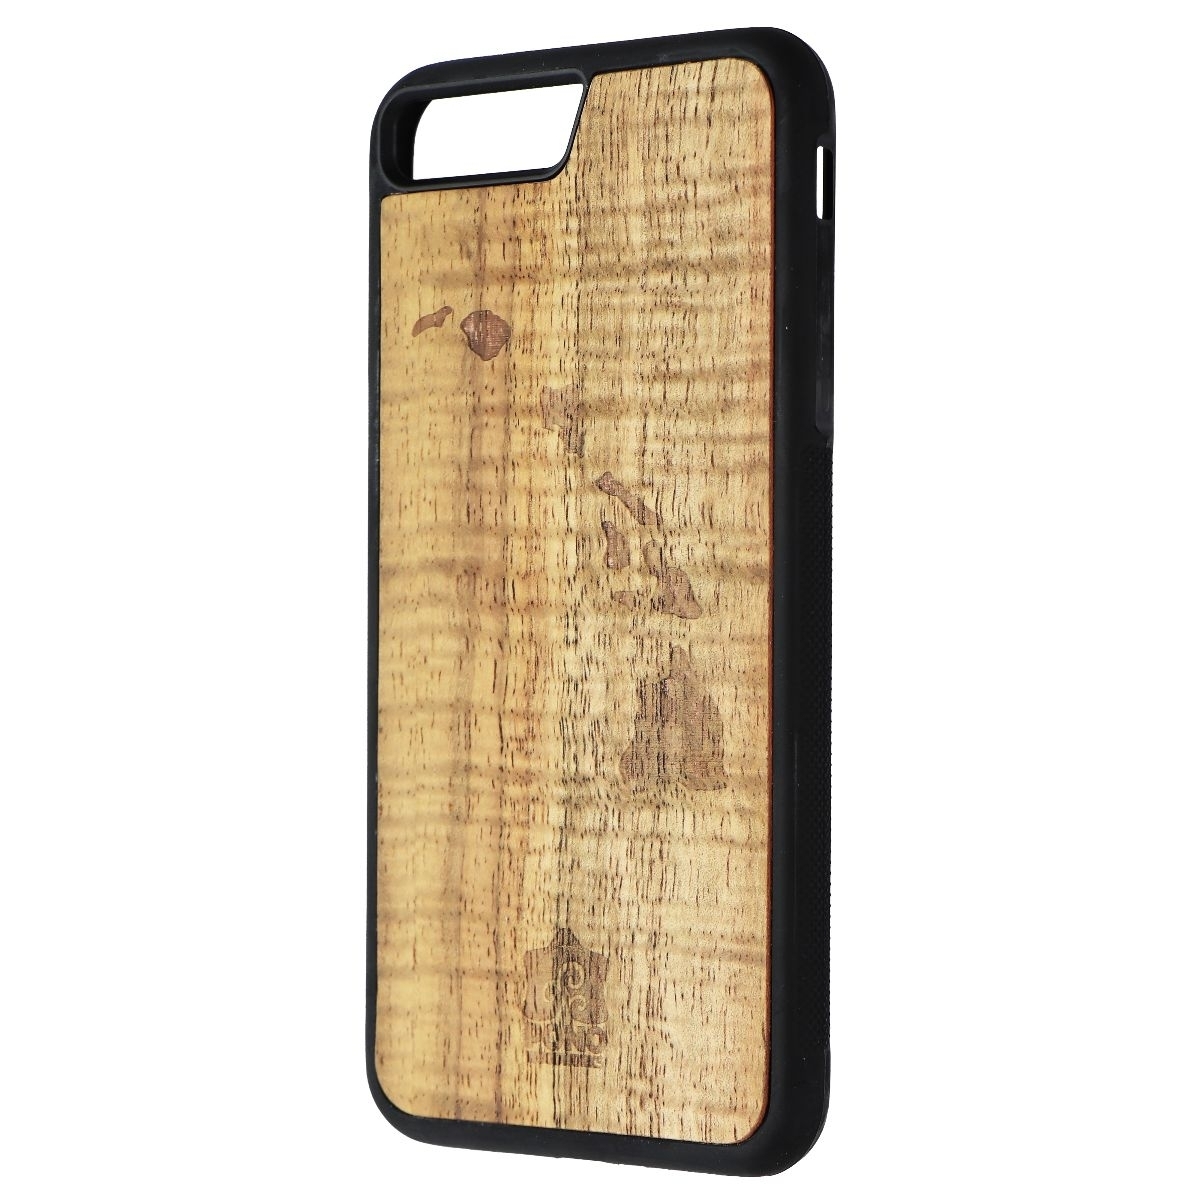 Sonix Wood Case For Apple IPhone 7 Plus - Hawaiian Koa Wood/Islands (Refurbished)